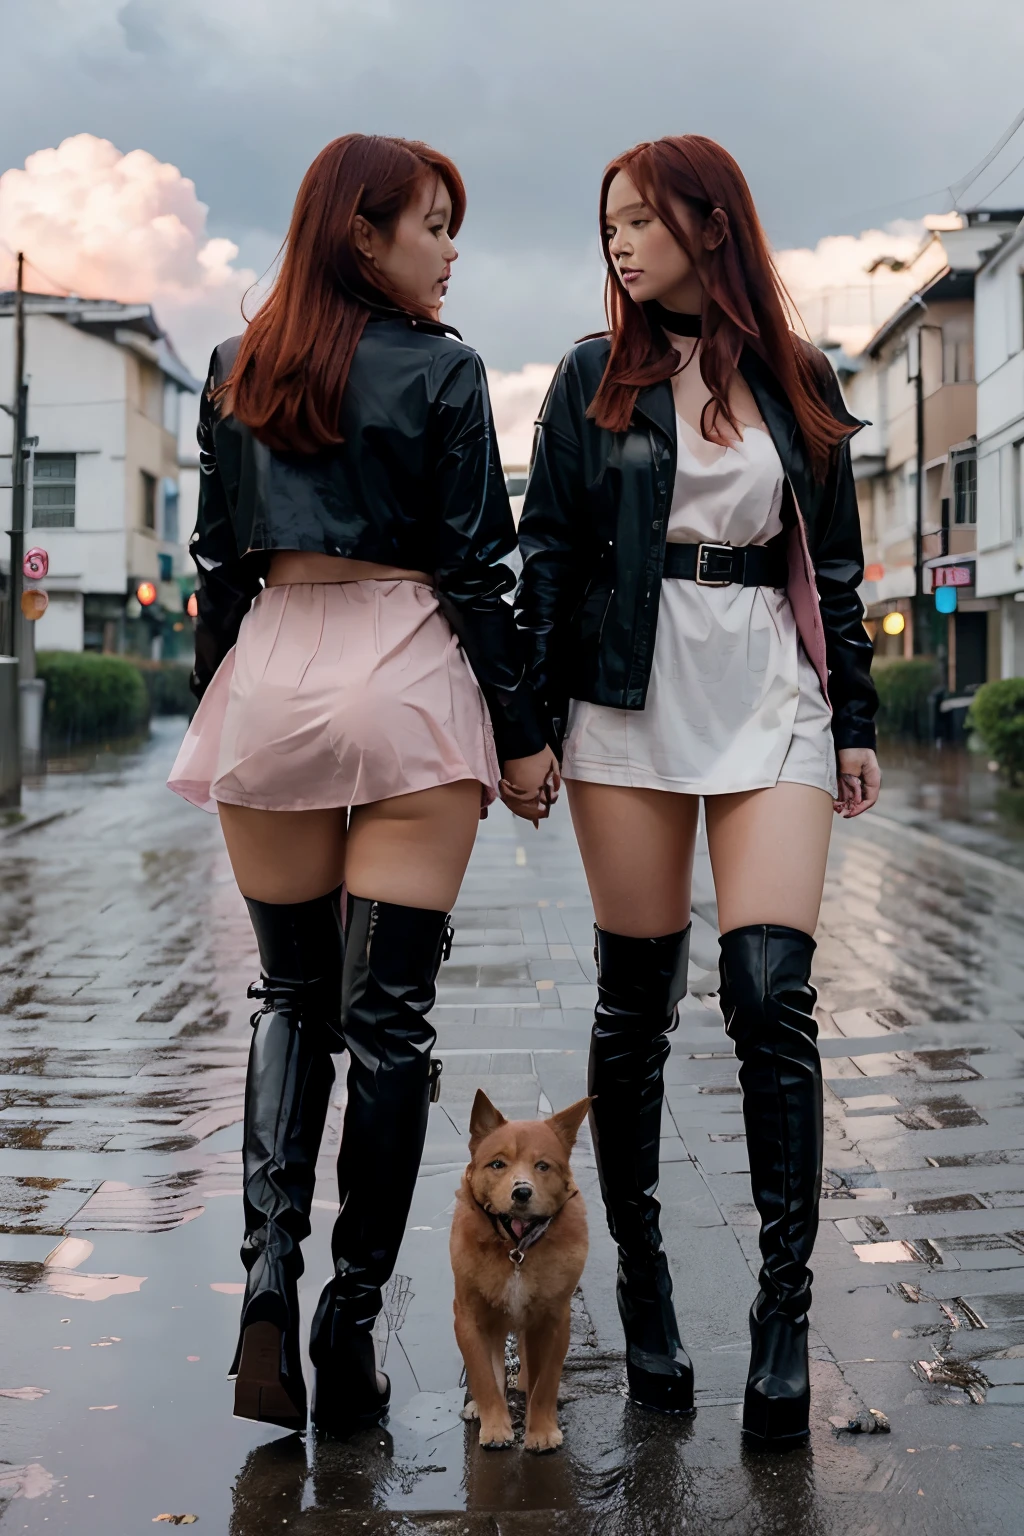 Deux filles japonaises nues rousses sexy dans une exploration à pied du monde des filles uniquement, portant uniquement des bottes noires à talons hauts et un collier de chien. pluie. nuages roses. Rues rouges. bâtiments blancs.